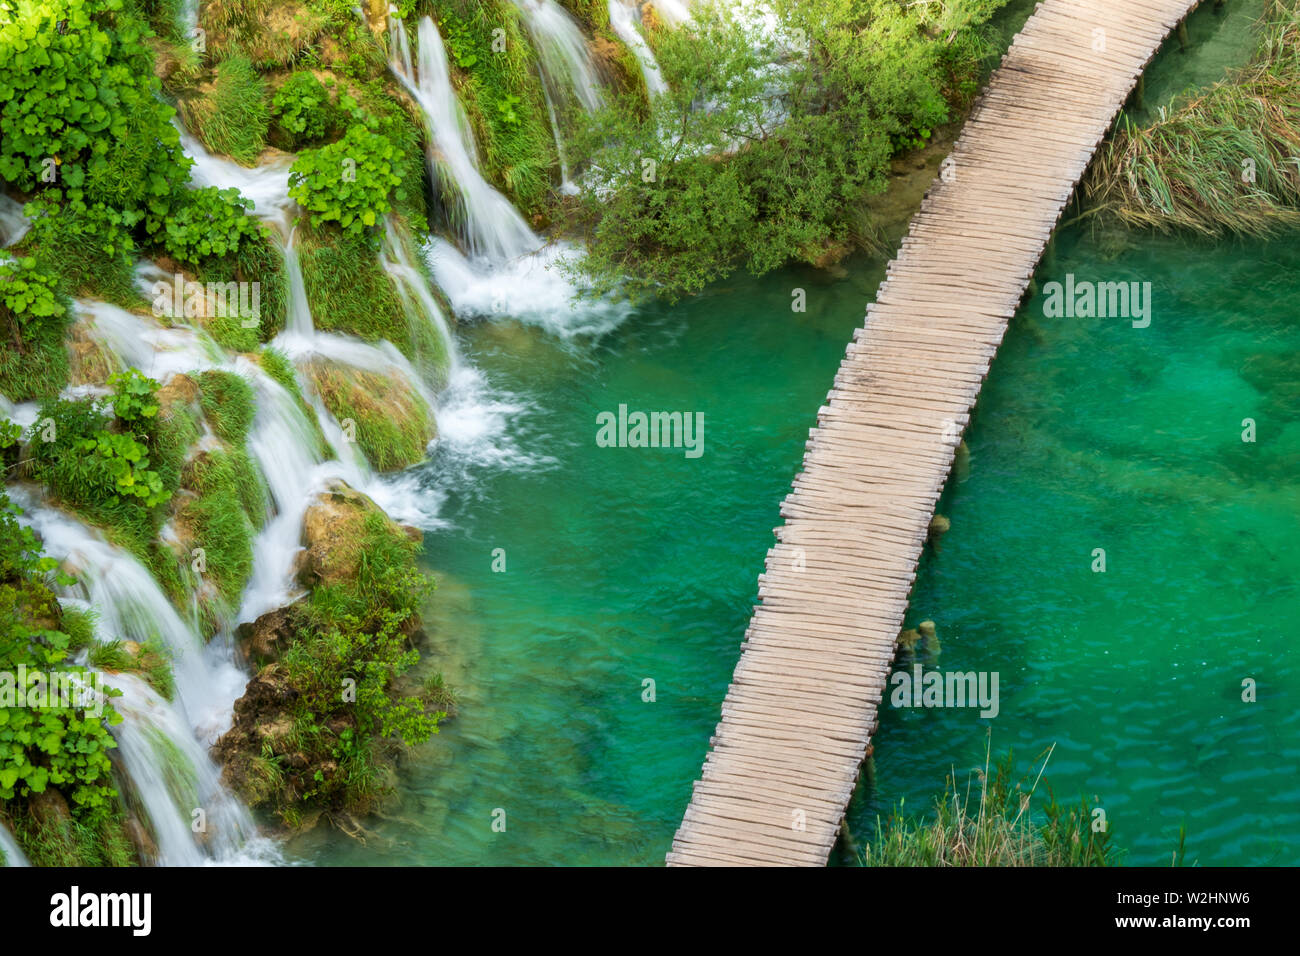 Hetzen, reines, frisches Wasser ergiesst sich die natürliche Hindernisse in  den azurblauen See Kaluđerovac im Nationalpark Plitvicer Seen in Kroatien  Stockfotografie - Alamy